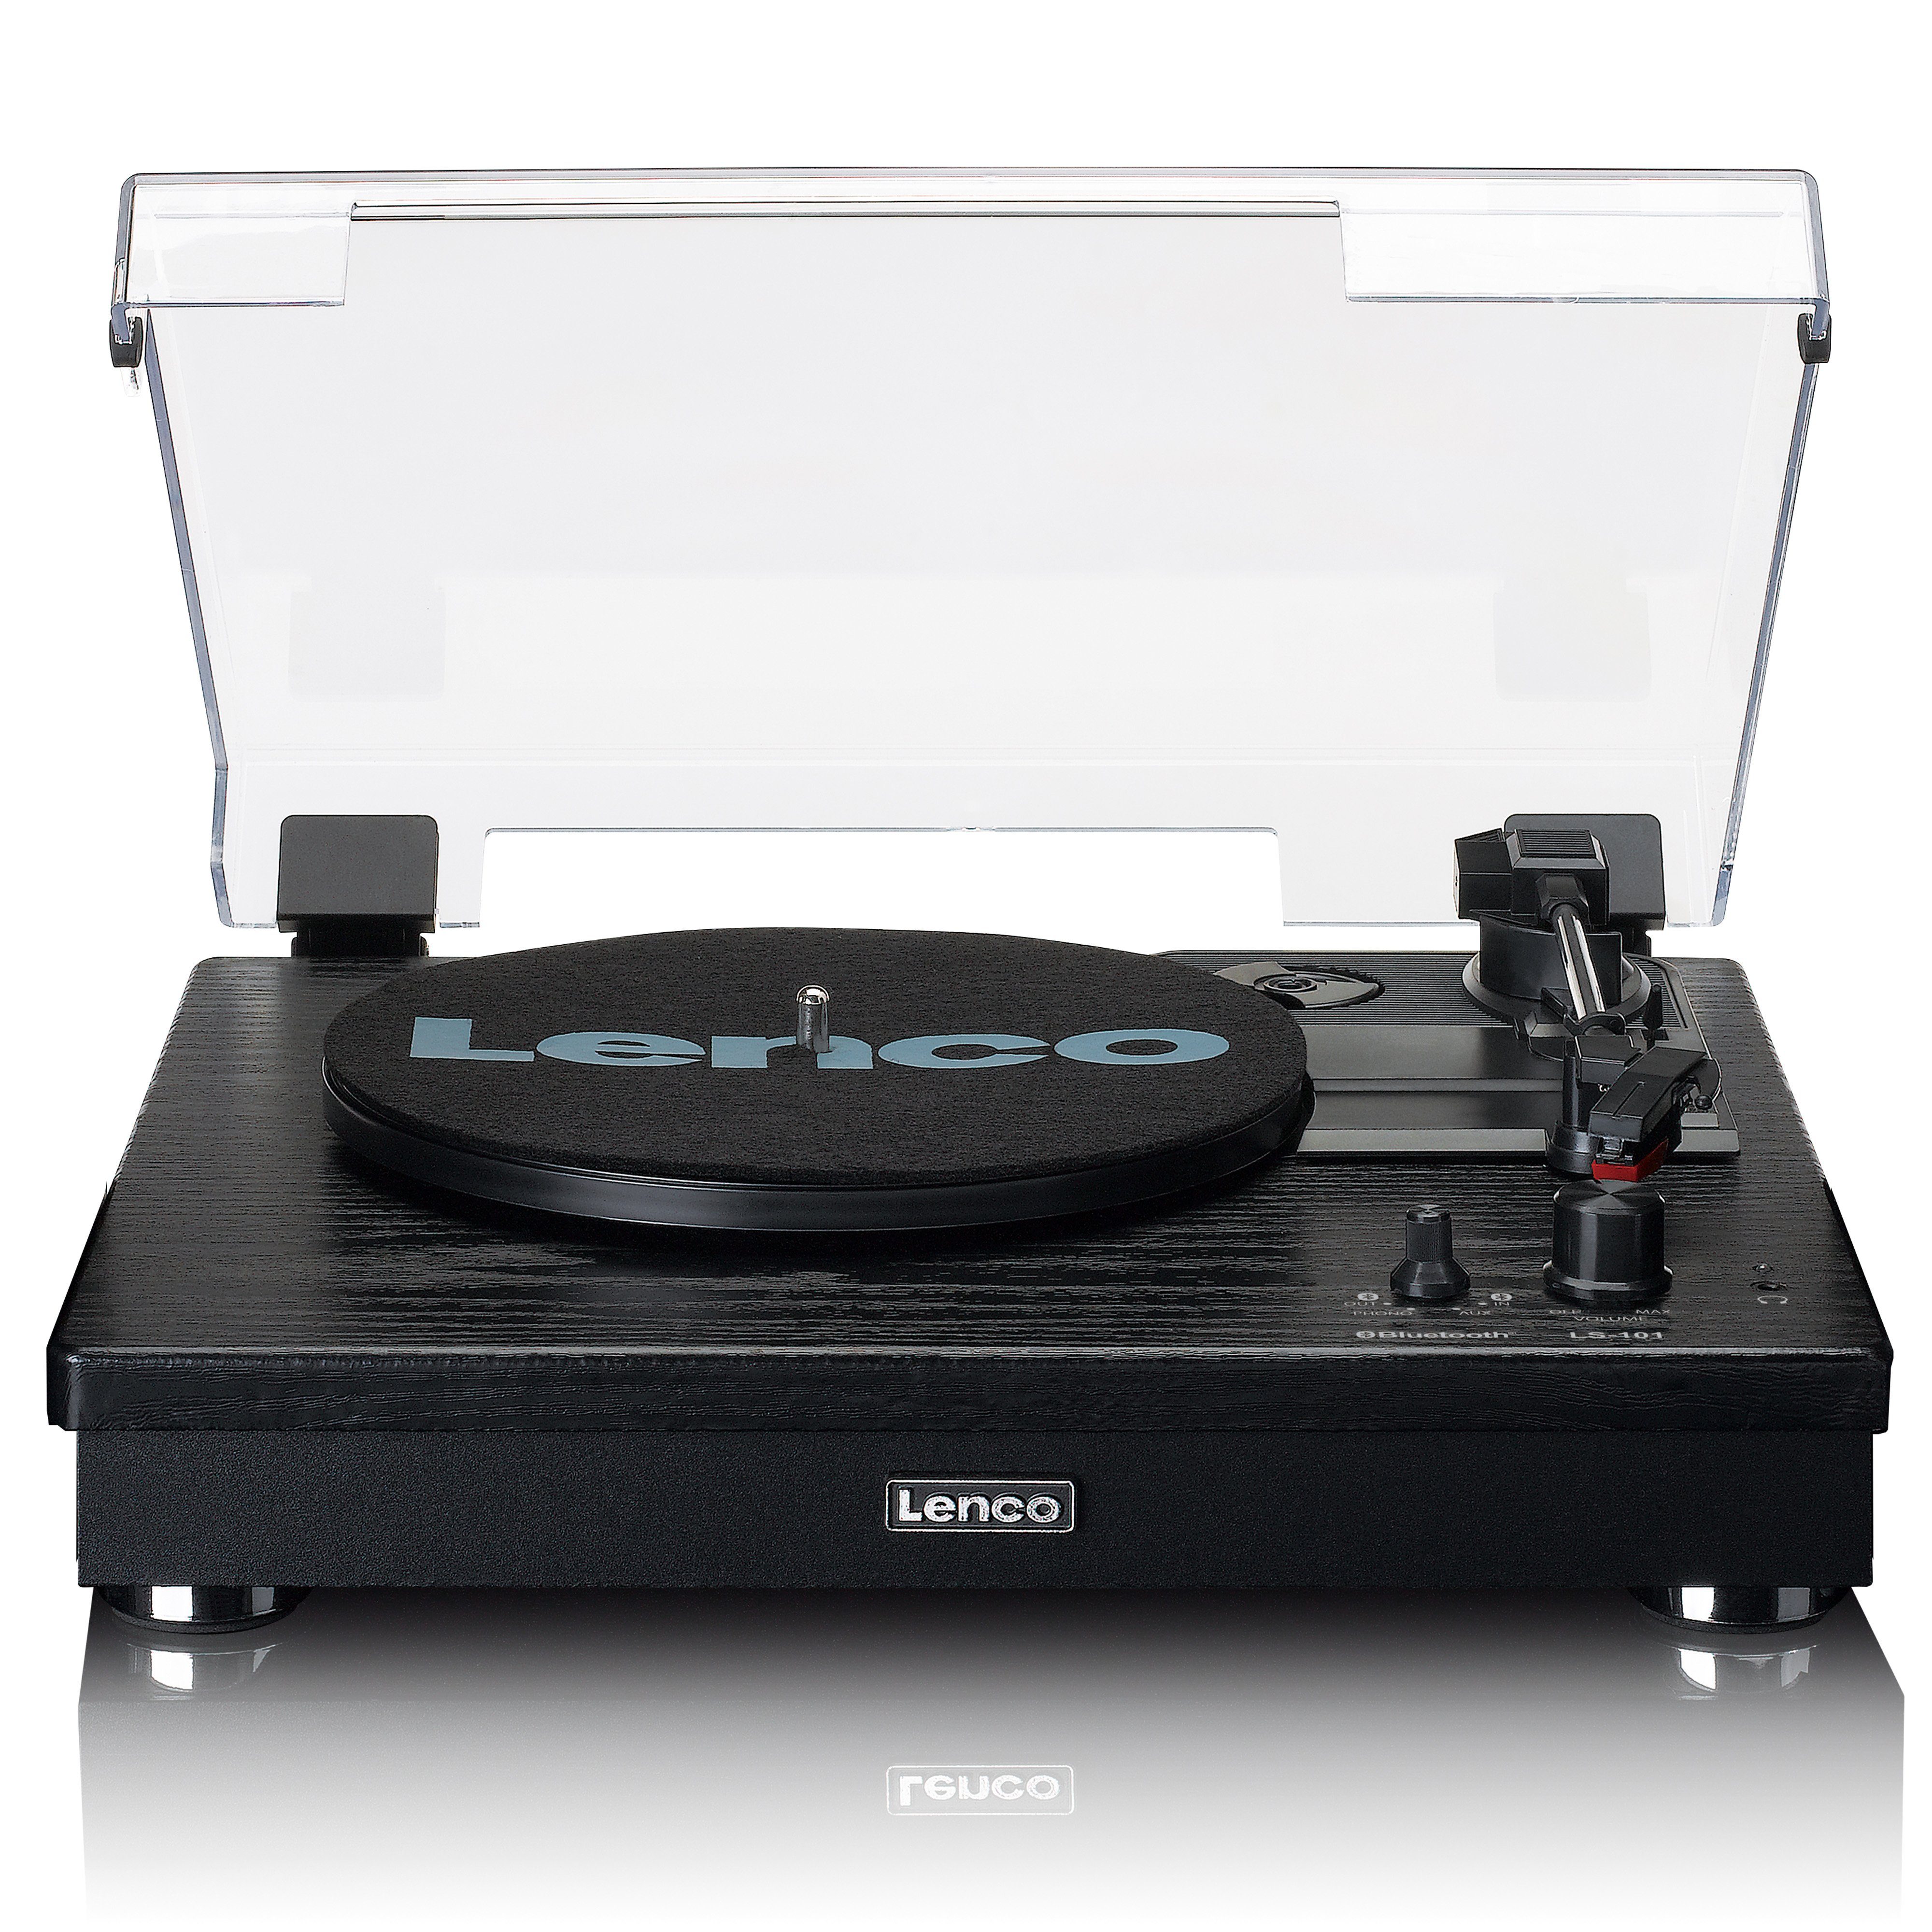 Lenco LS-101BK Plattenspieler mit Bluetooth und separaten Lautsprechern  Plattenspieler (Bluetooth), 3 Geschwindigkeiten 33, 45 und 78 U/min